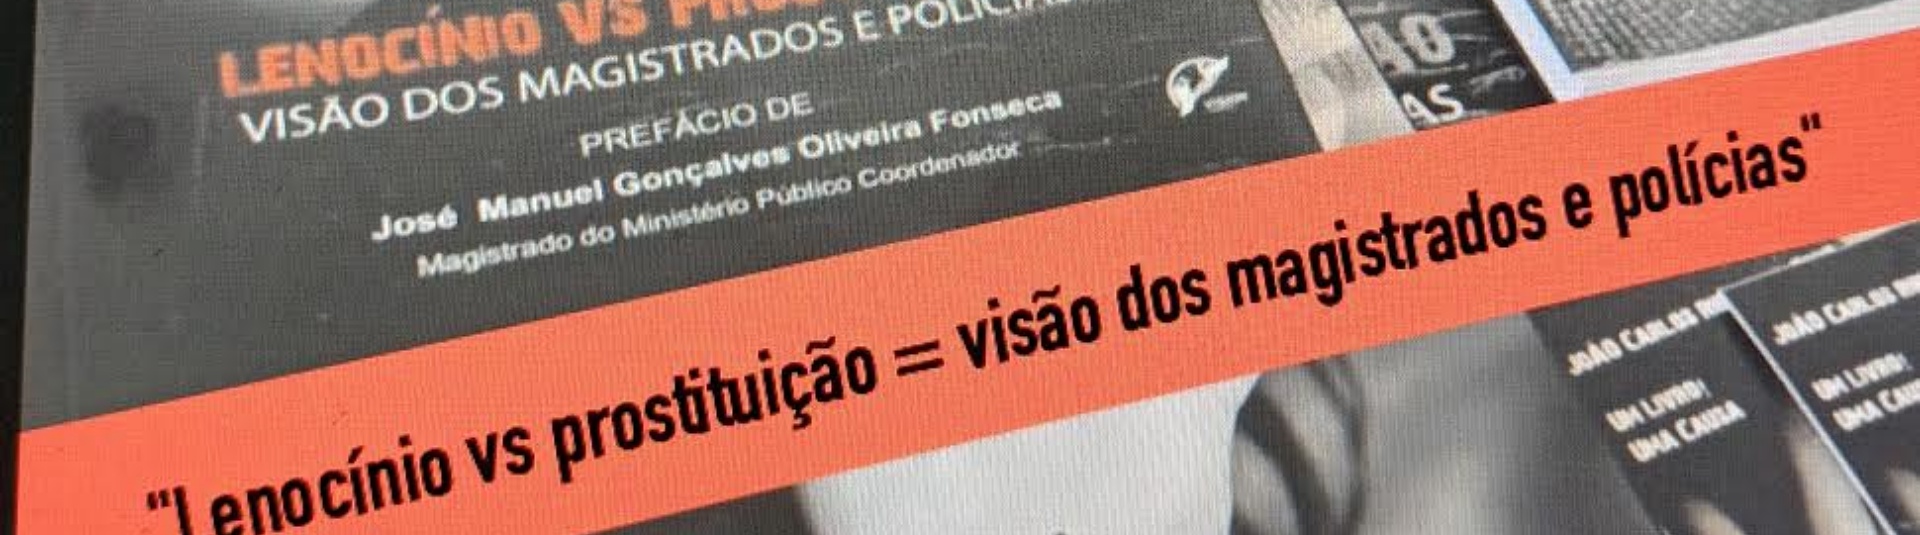 Apresentação do Livro "Lenocínio VS Prostituição - A Visão dos Magistrados e Polícias" do autor João Cruz